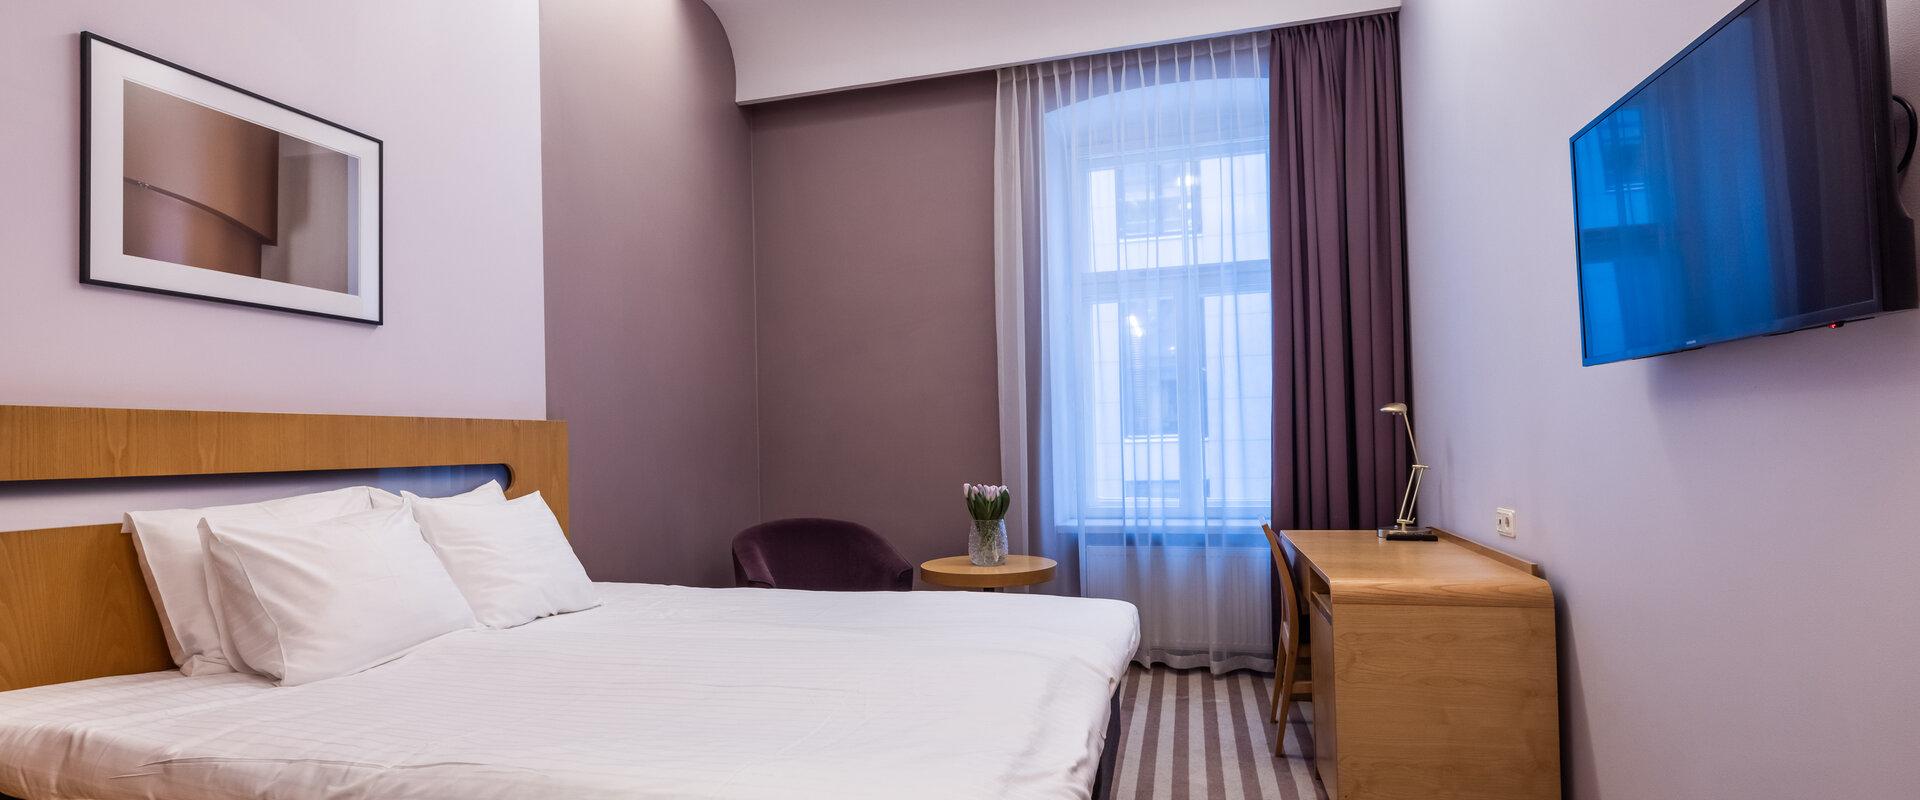 Standard M Zimmer des Hotels Soho mit breitem Bett